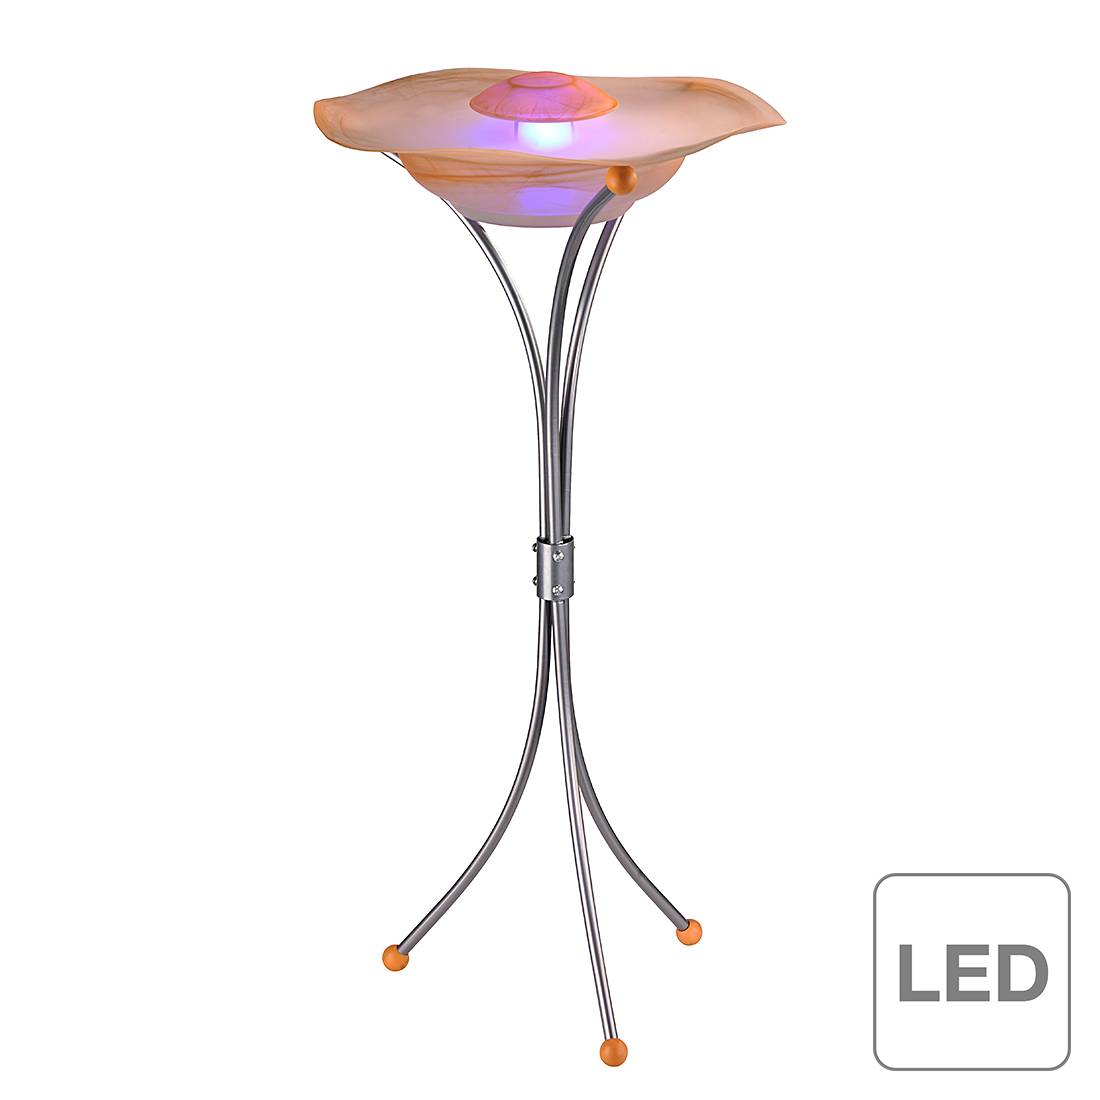 EEK A+, LED-Stehleuchte Nebler - Metall/ Glas - Silber/ Pink/ Orange, Leuchten Direkt